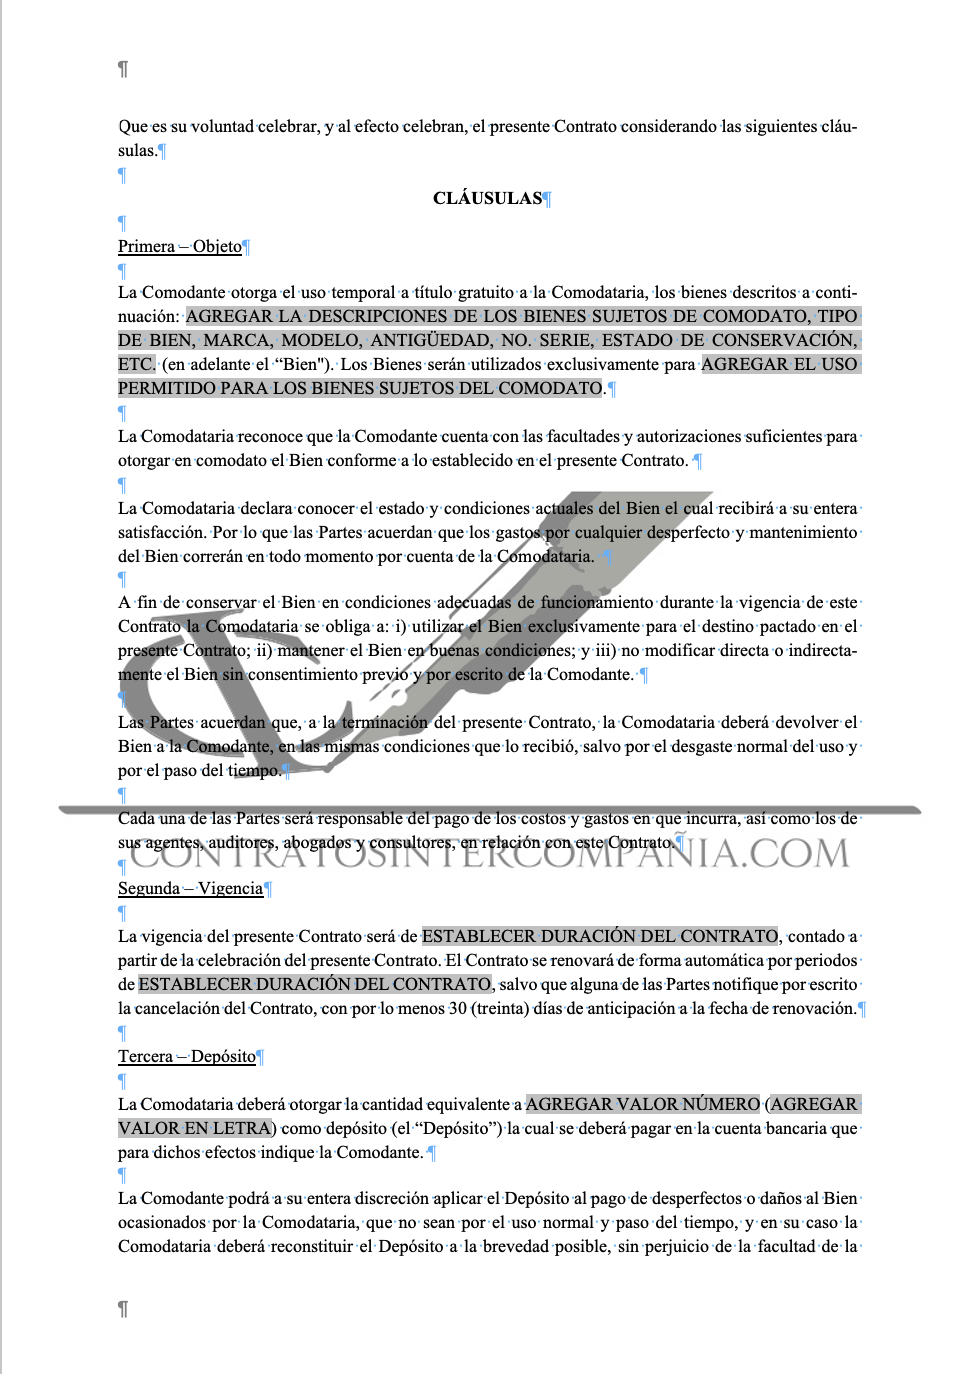 Contrato comodato - Contratos Intercompañía